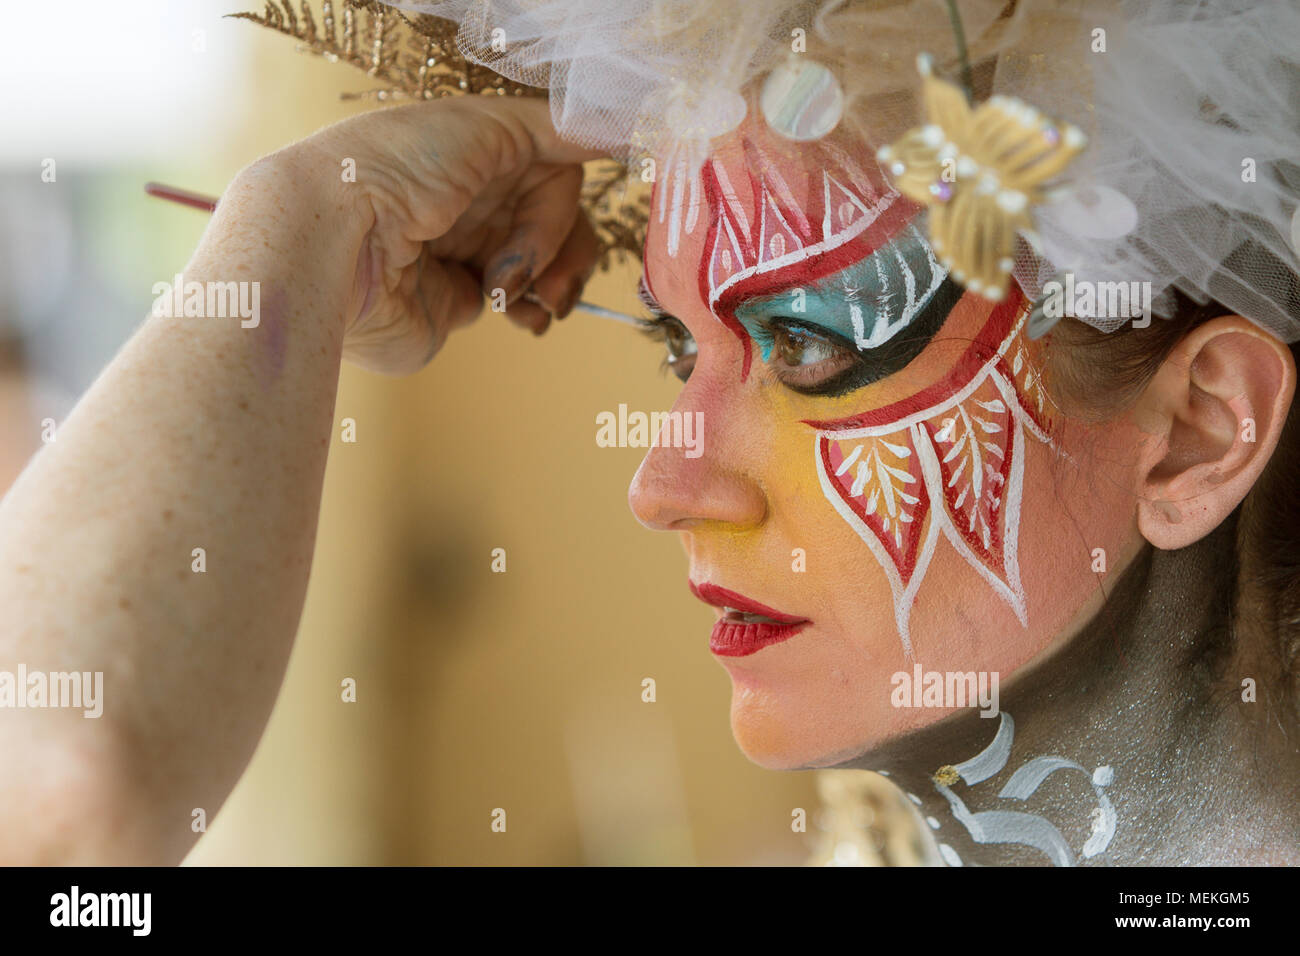 Un artista se aplica hábilmente colorida pintura corporal a un modelo femenino de cara a la ecléctica 5 Arts Fest el 12 de septiembre de 2015, en Atlanta, GA. Foto de stock